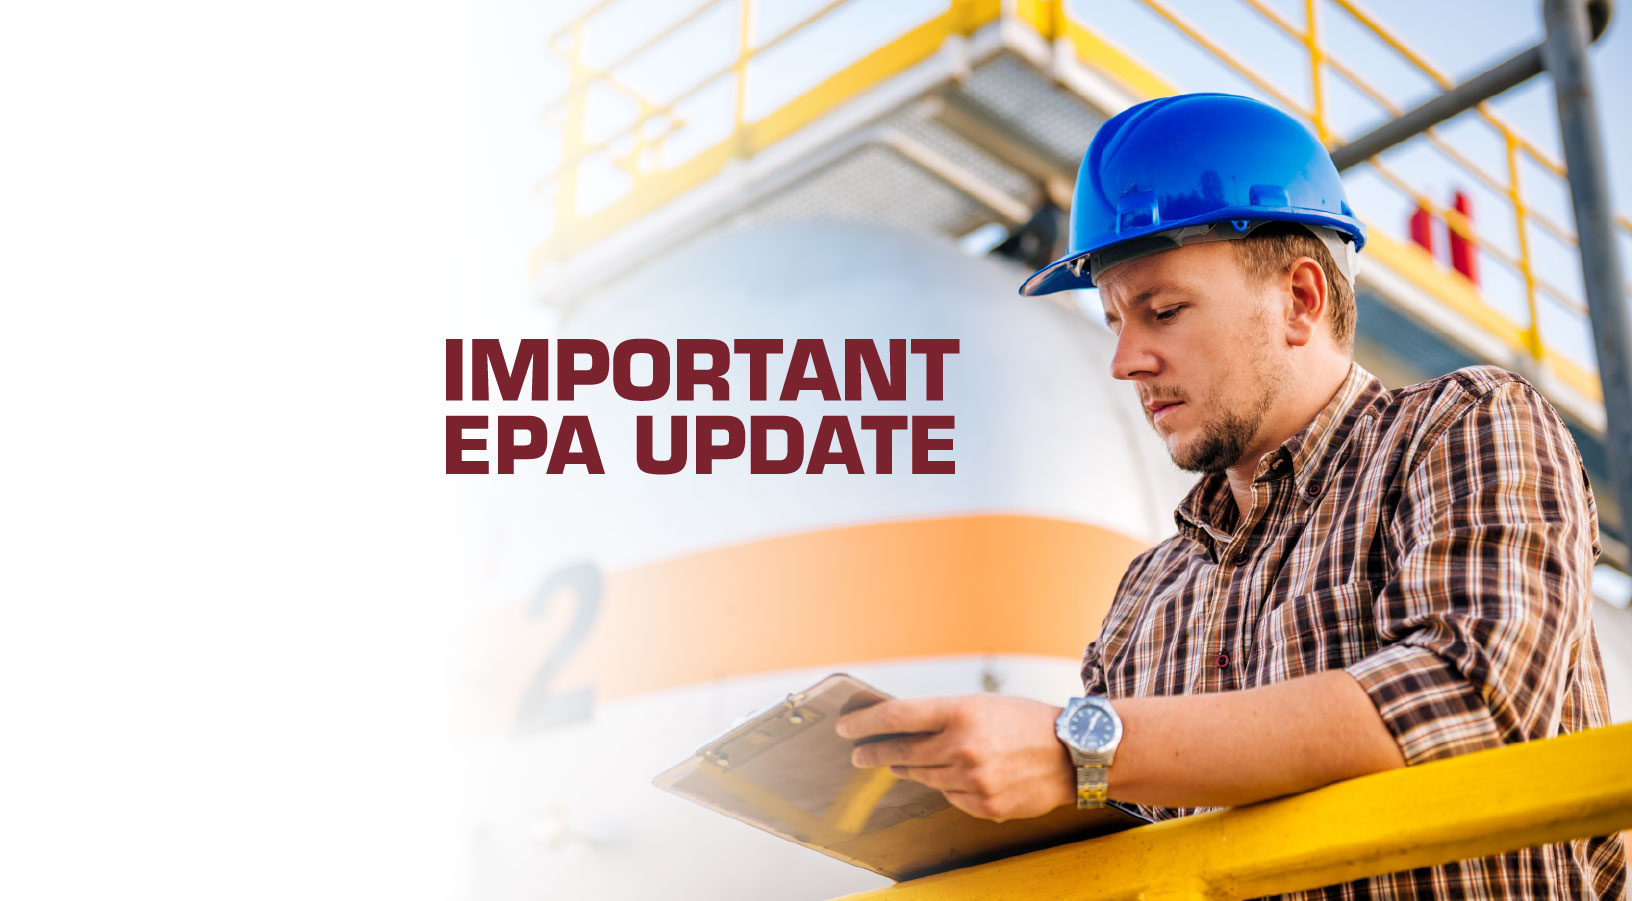 U.S. EPA Declines to Extend UST Compliance Deadline of October 2018